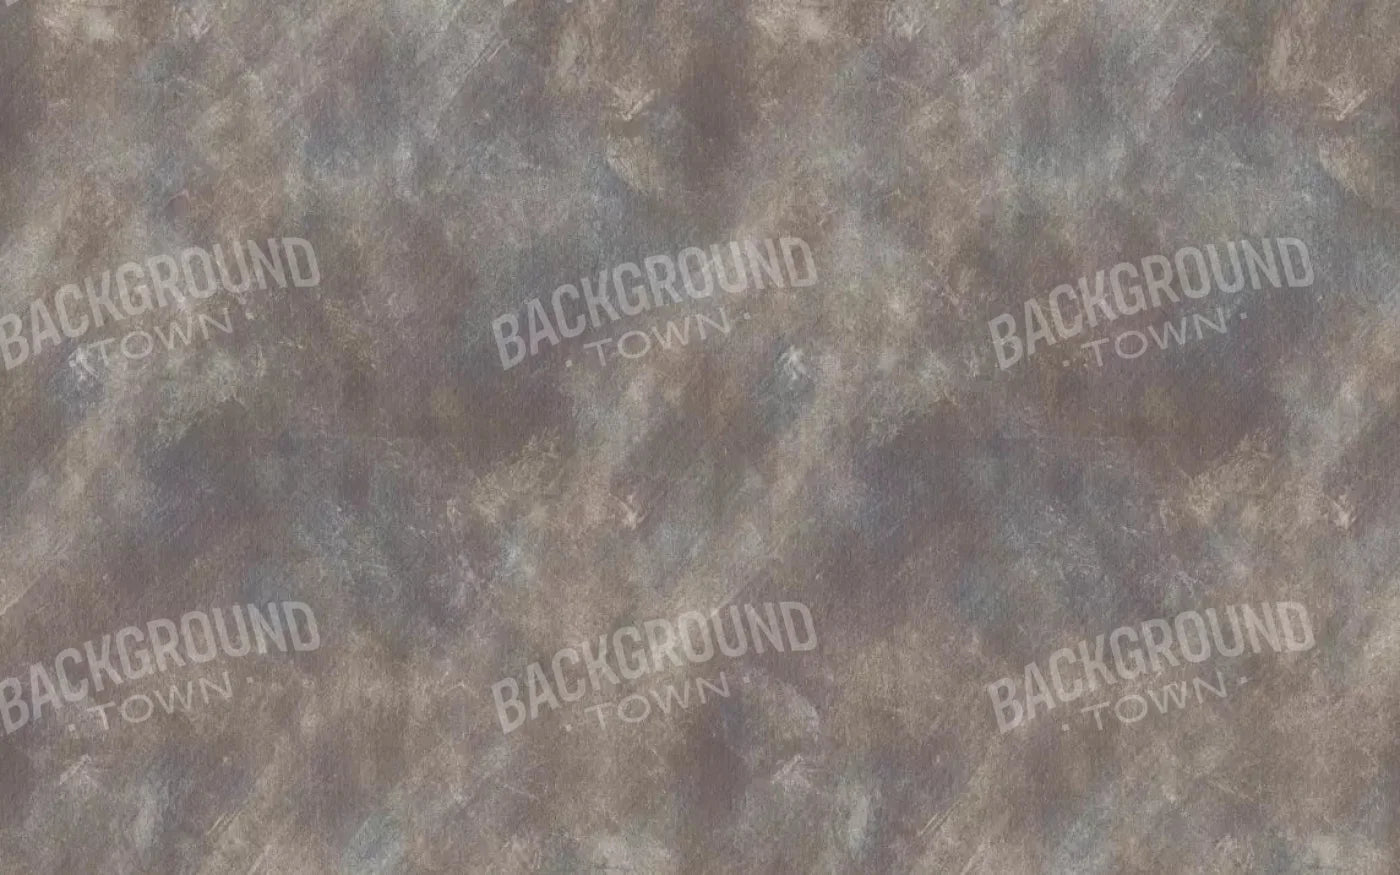 Bronwyn 14X9 Ultracloth ( 168 X 108 Inch ) Backdrop